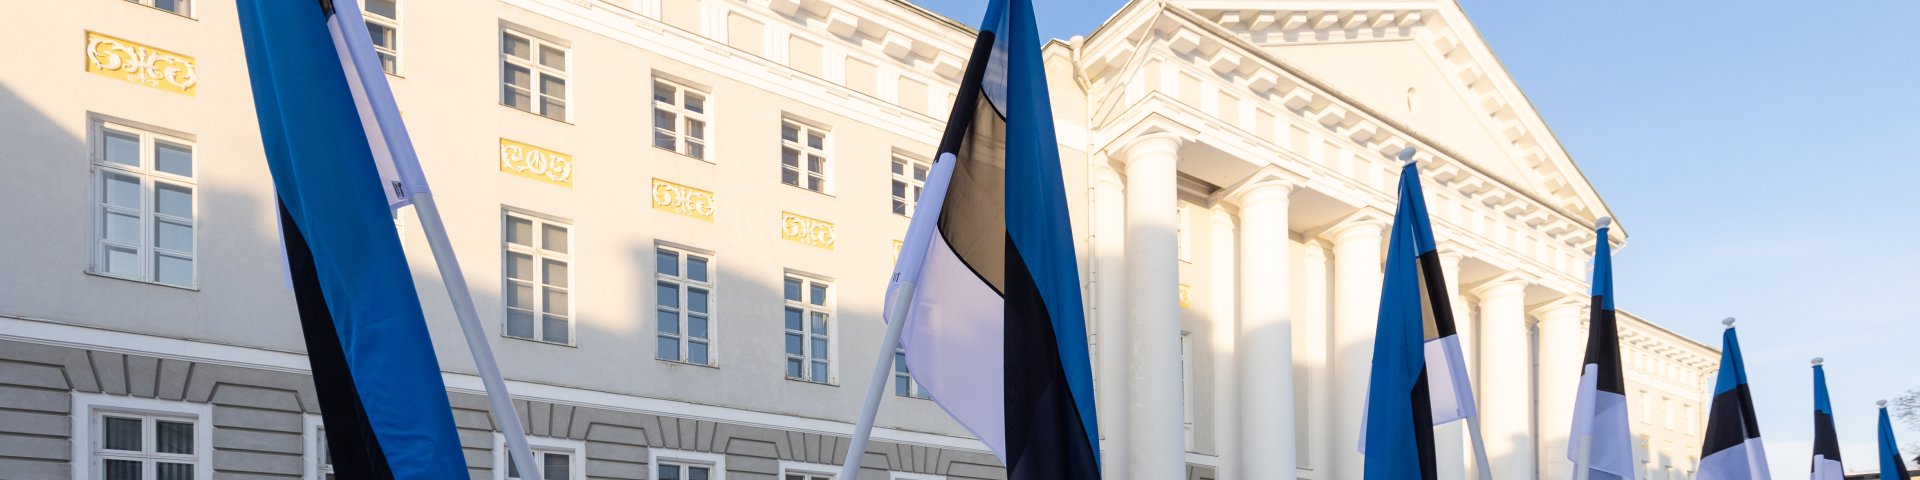 Tartu Ülikooli peahoone Eesti lippudega